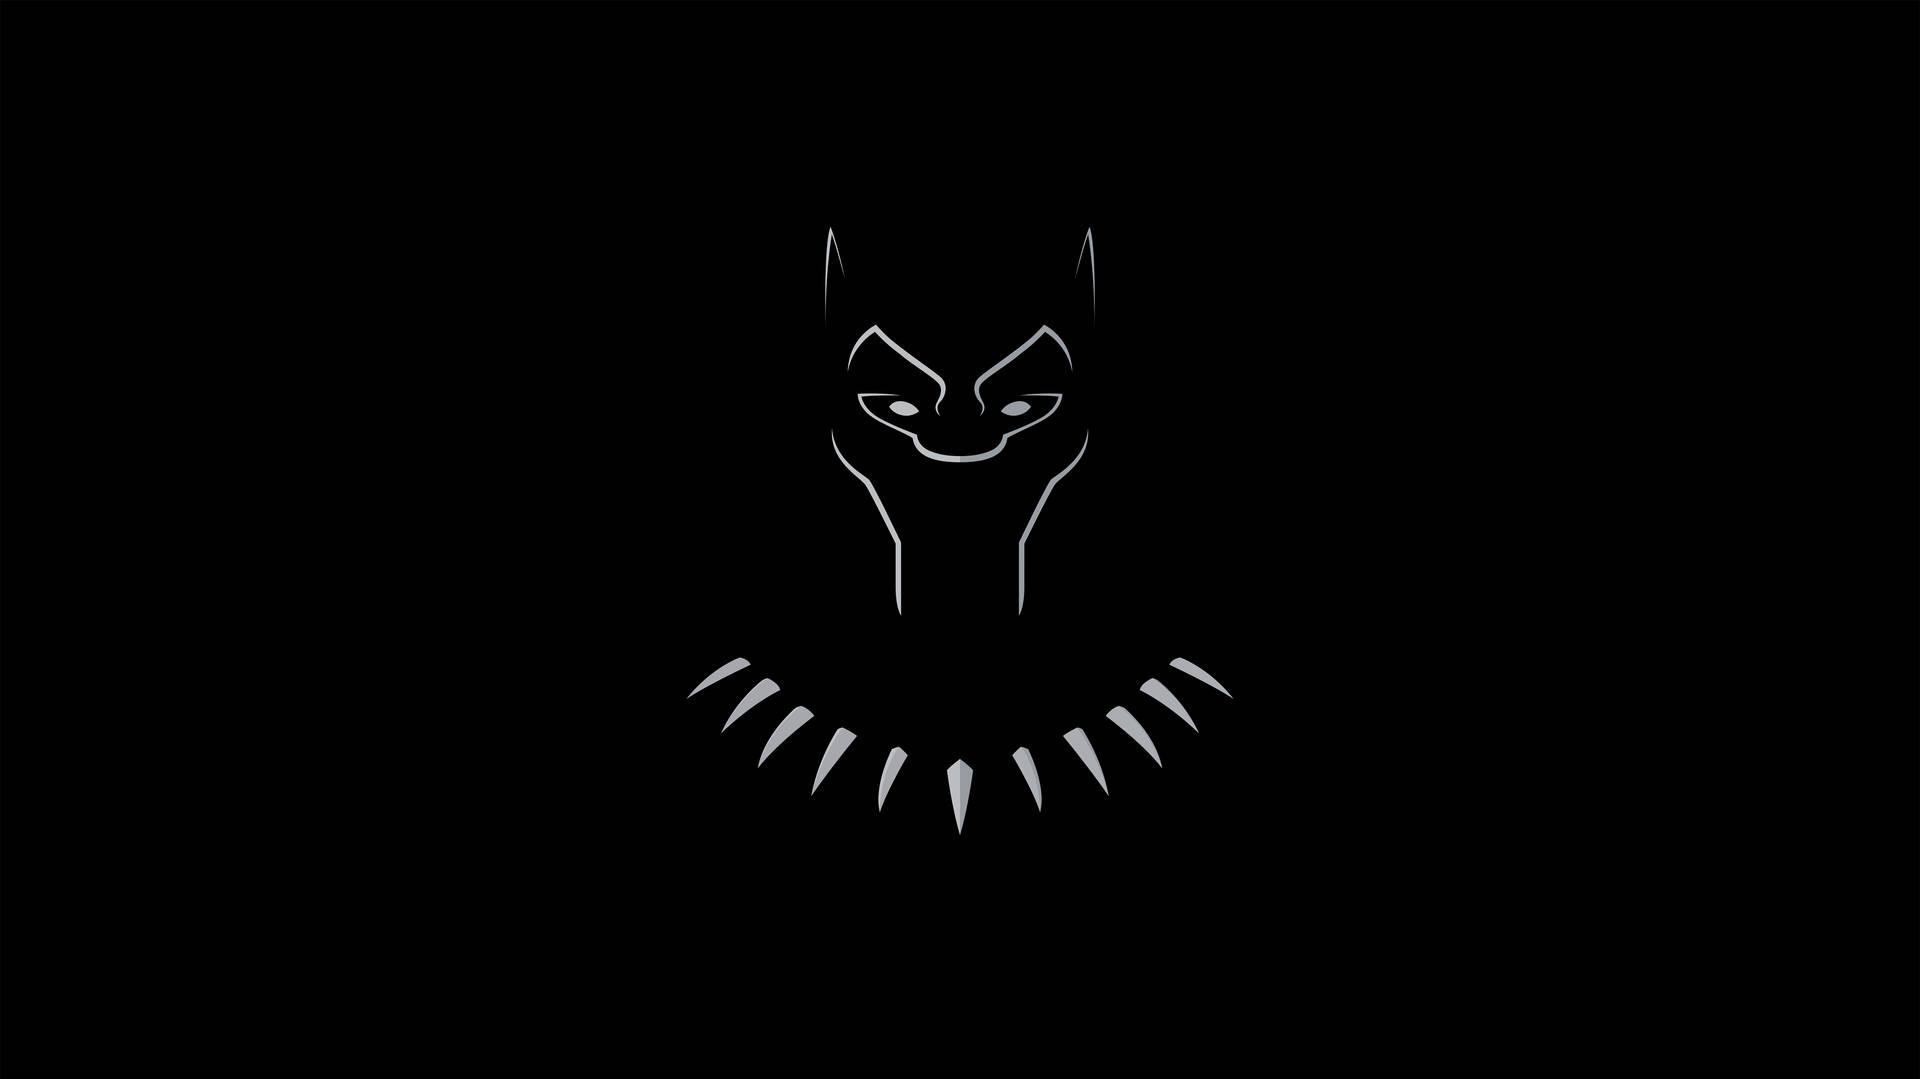 Minimal Black Panther 4k Ultra HD Dark Wallpaper